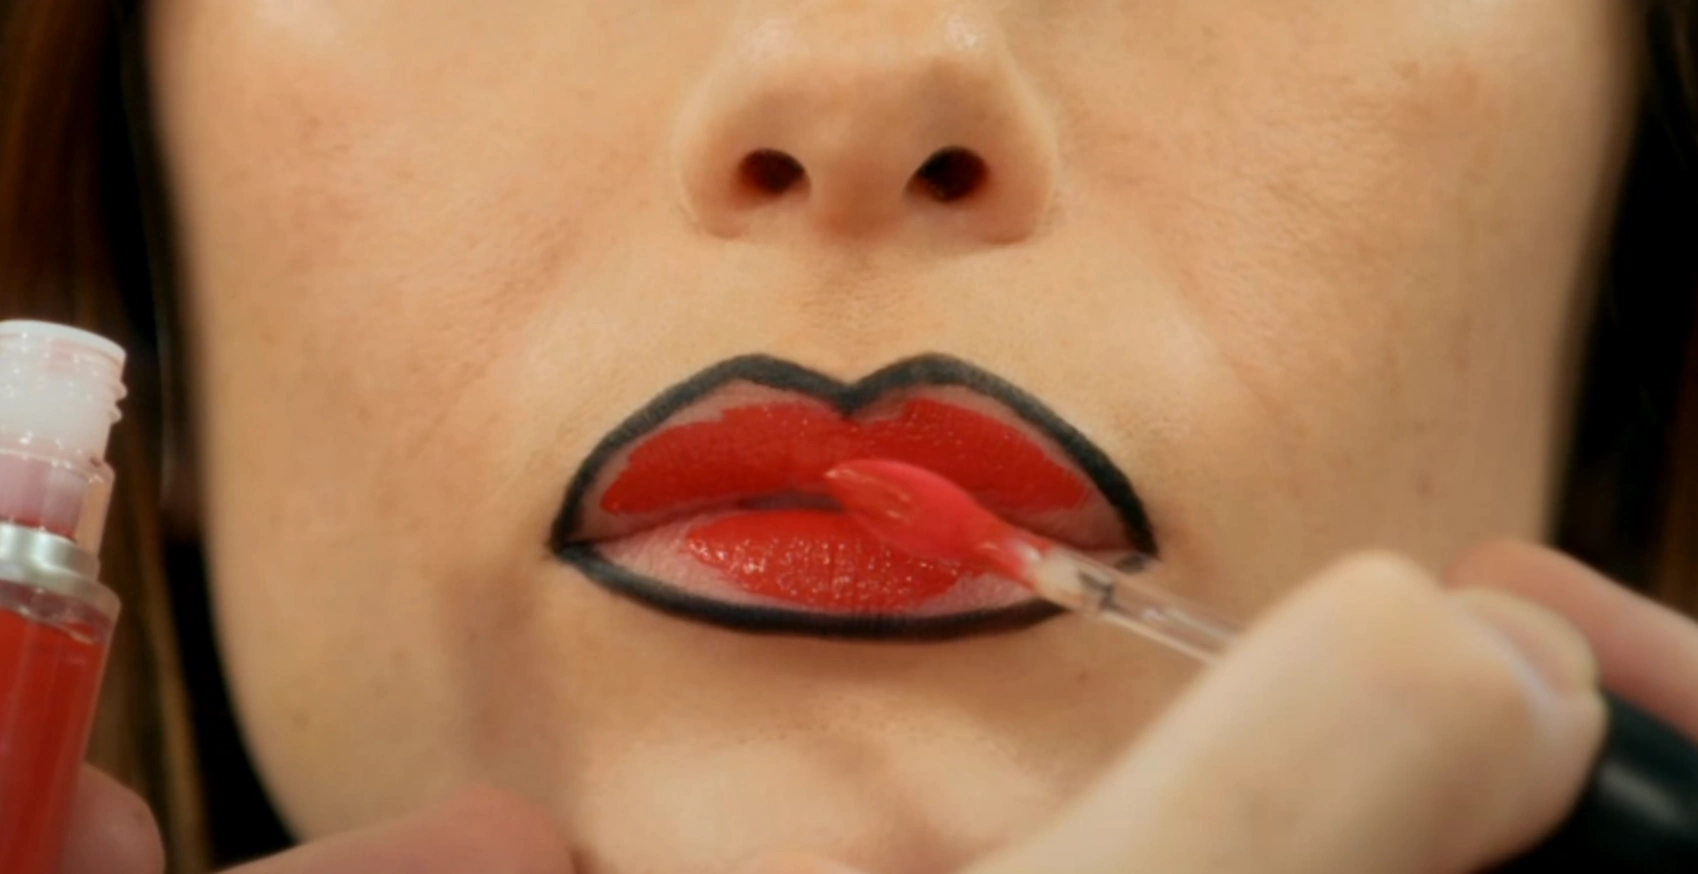 MUA filling in the lip with a liquid lipstick in a bright colour